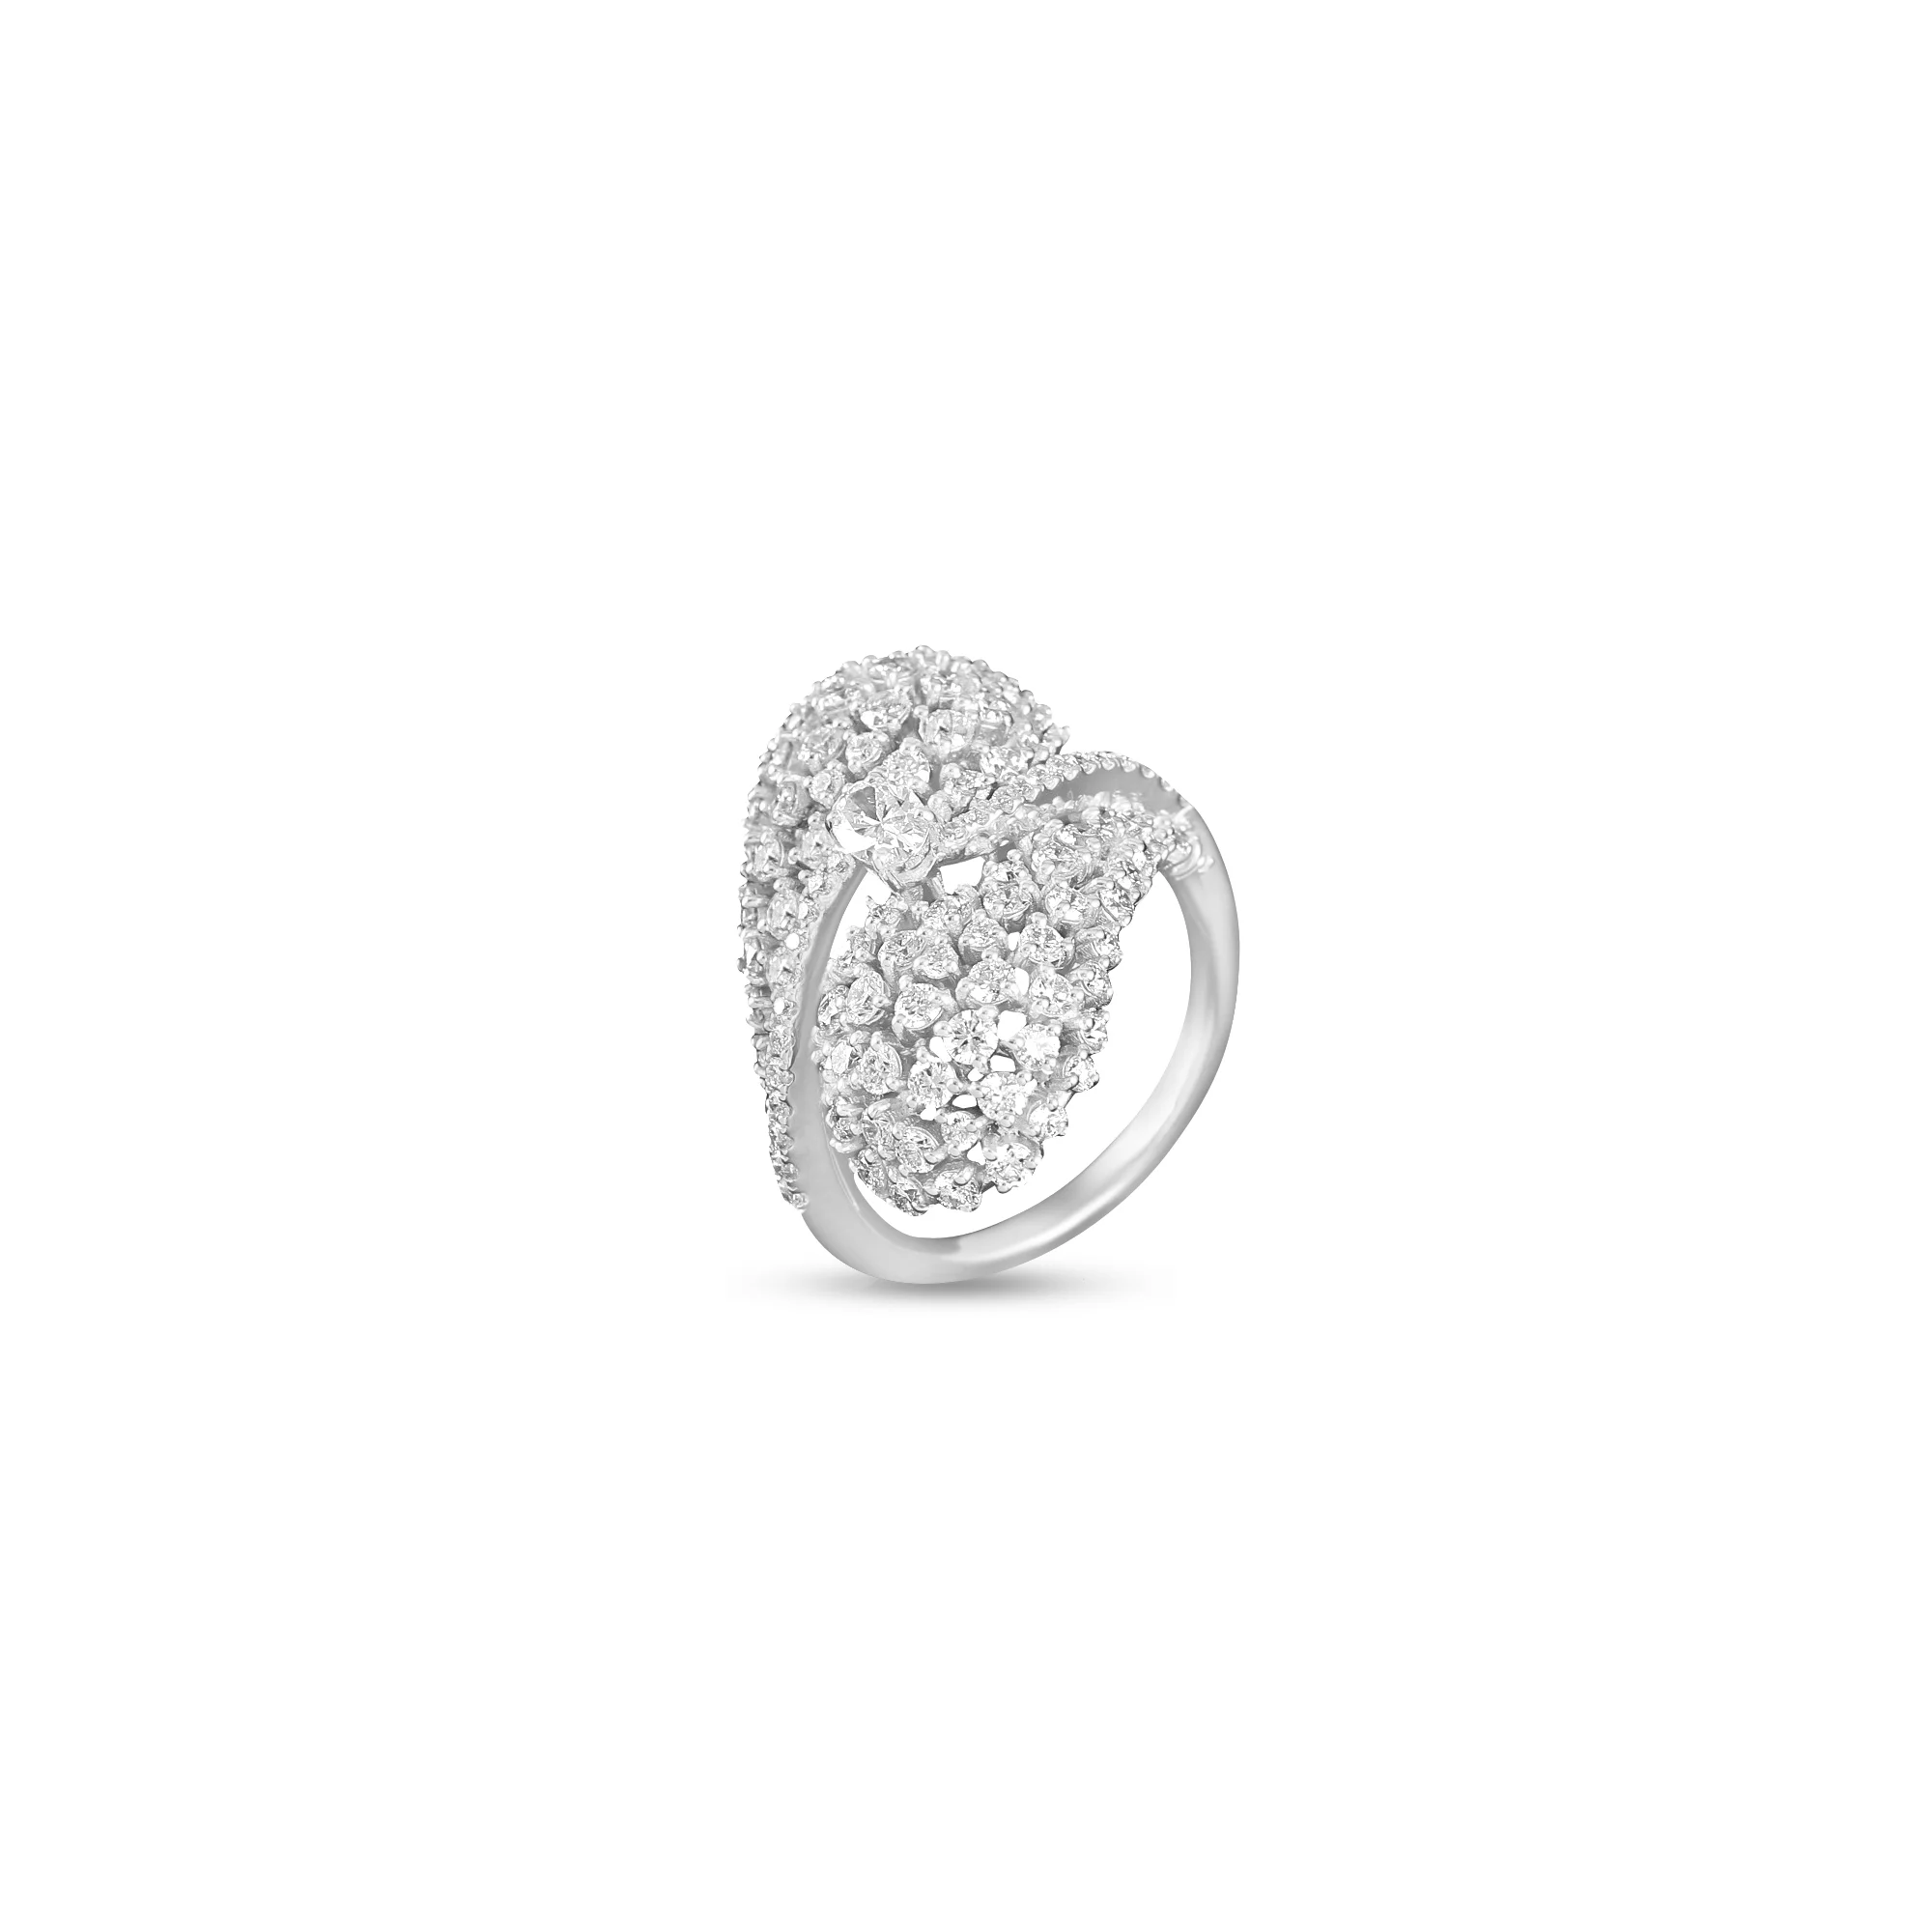 Buy Cluster Diamond Ring for women